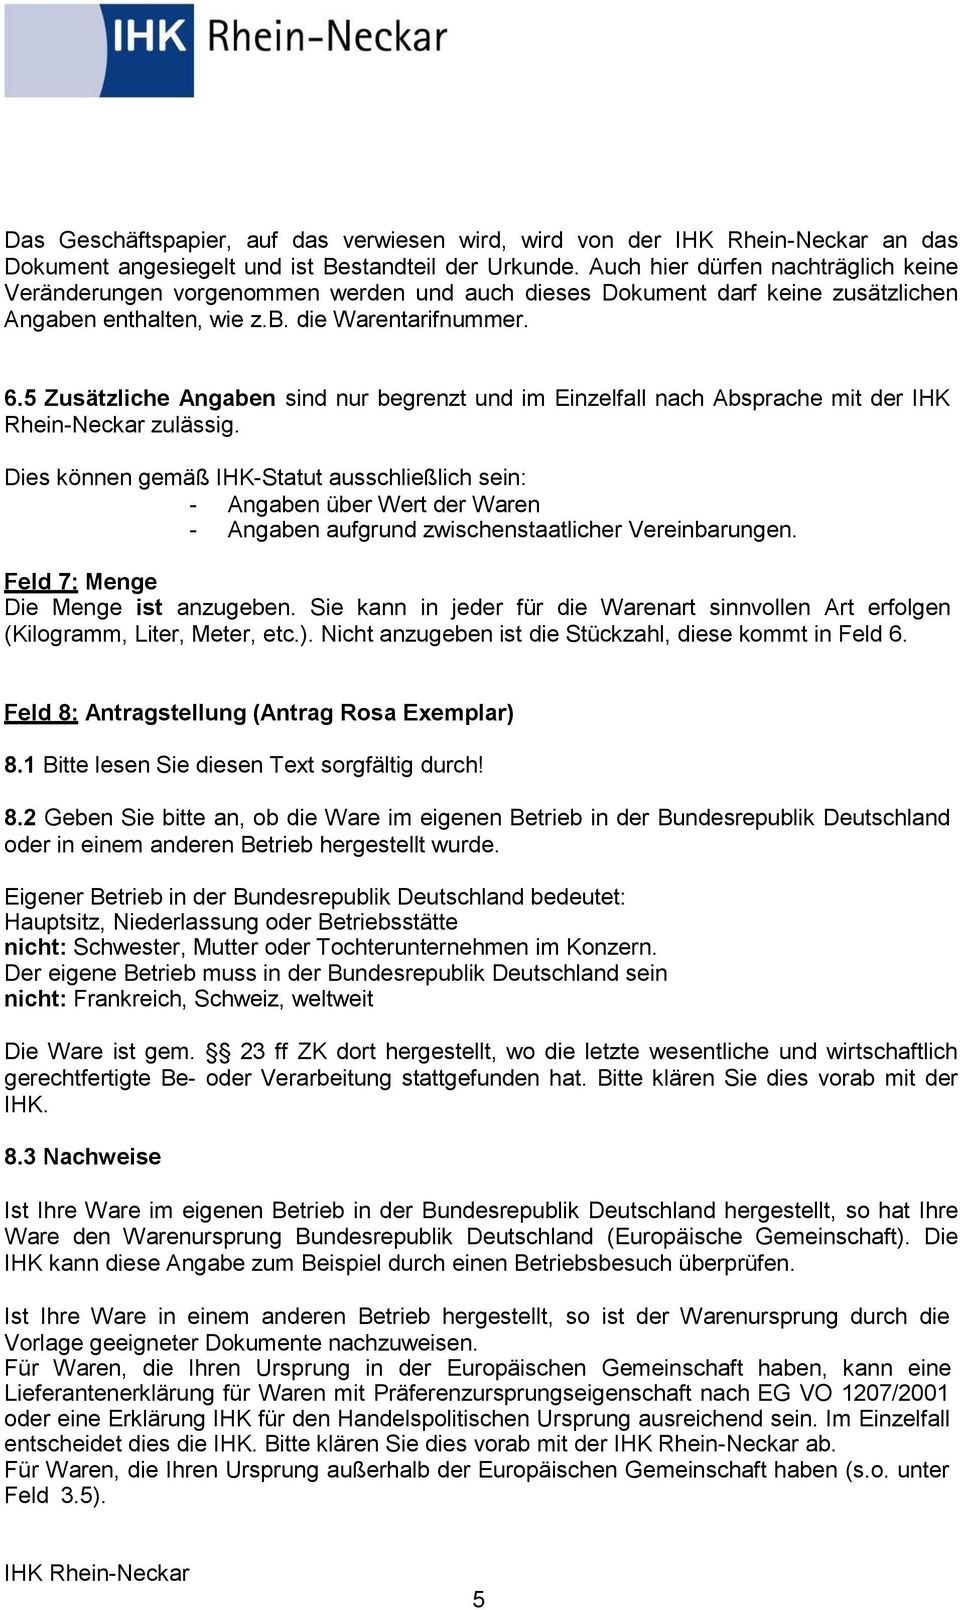 5 Zusätzliche Angaben sind nur begrenzt und im Einzelfall nach Absprache mit der IHK Rhein-Neckar zulässig.